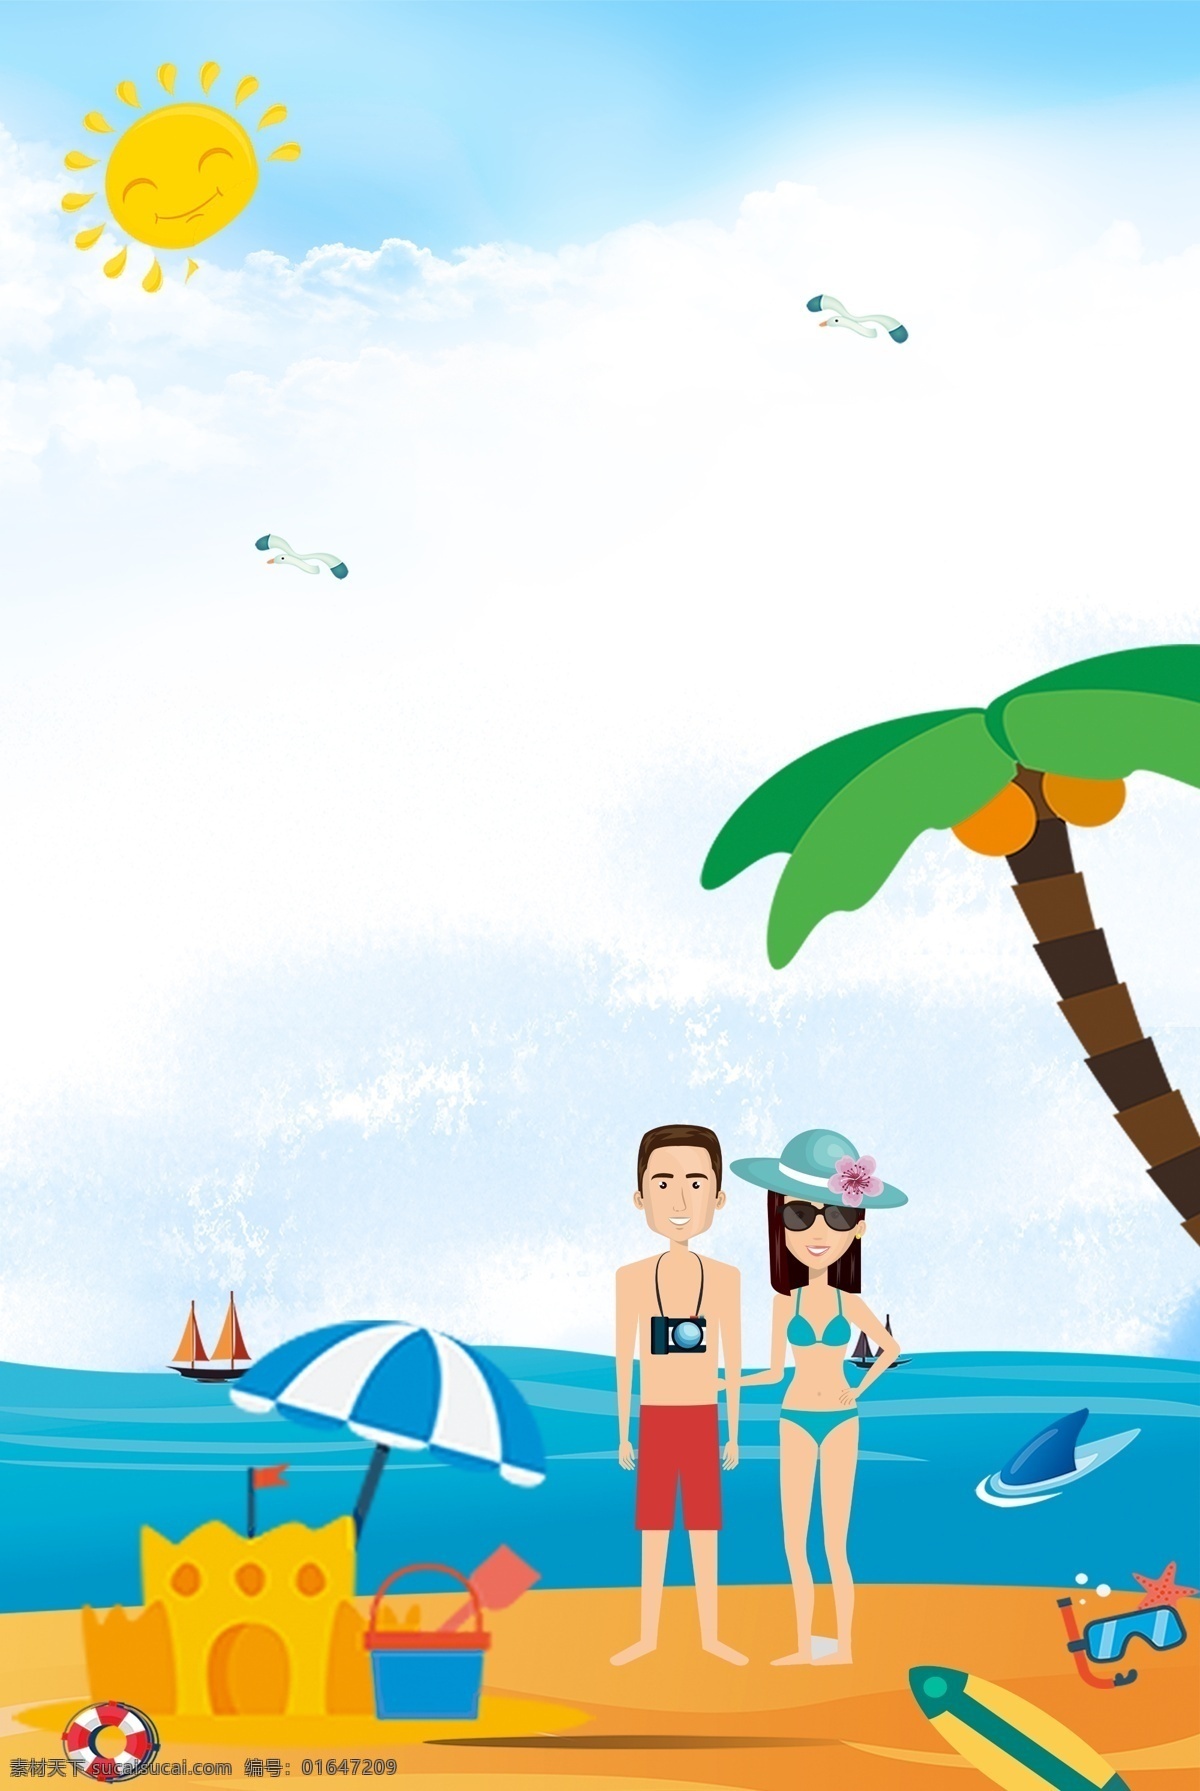 旅游出行 宣传海报 旅游 宣传 促销 打折 出行 出游 旅行 游玩 沙堡 情侣游 椰子树